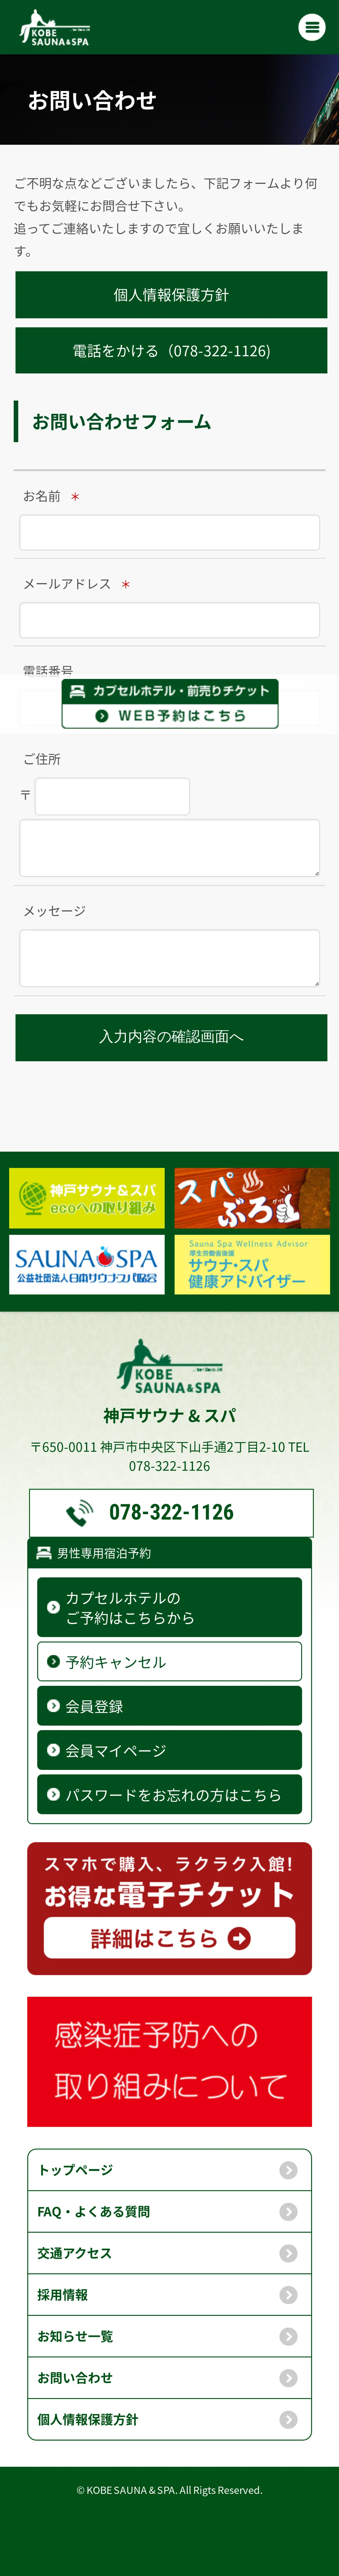 キャプチャ画面 会社名:神戸サウナ & スパプロジェクト名:KOBESAUNA＆SPA 画面名:問い合わせフォーム デバイス名:SPカテゴリ:旅行・ホテル・旅館タグ:SP,問い合わせフォーム